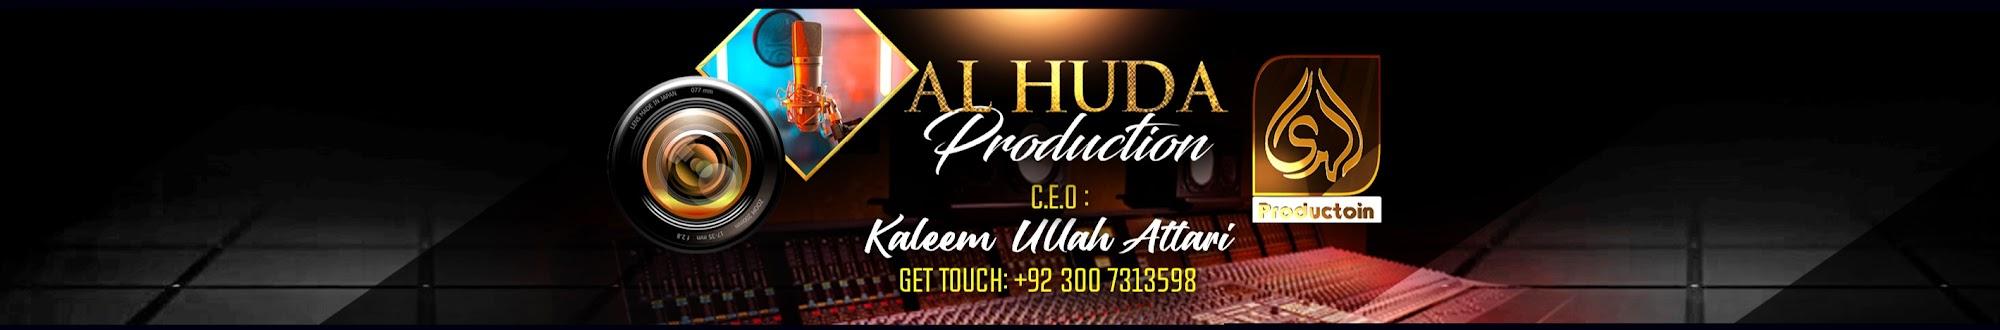 Al Huda Production